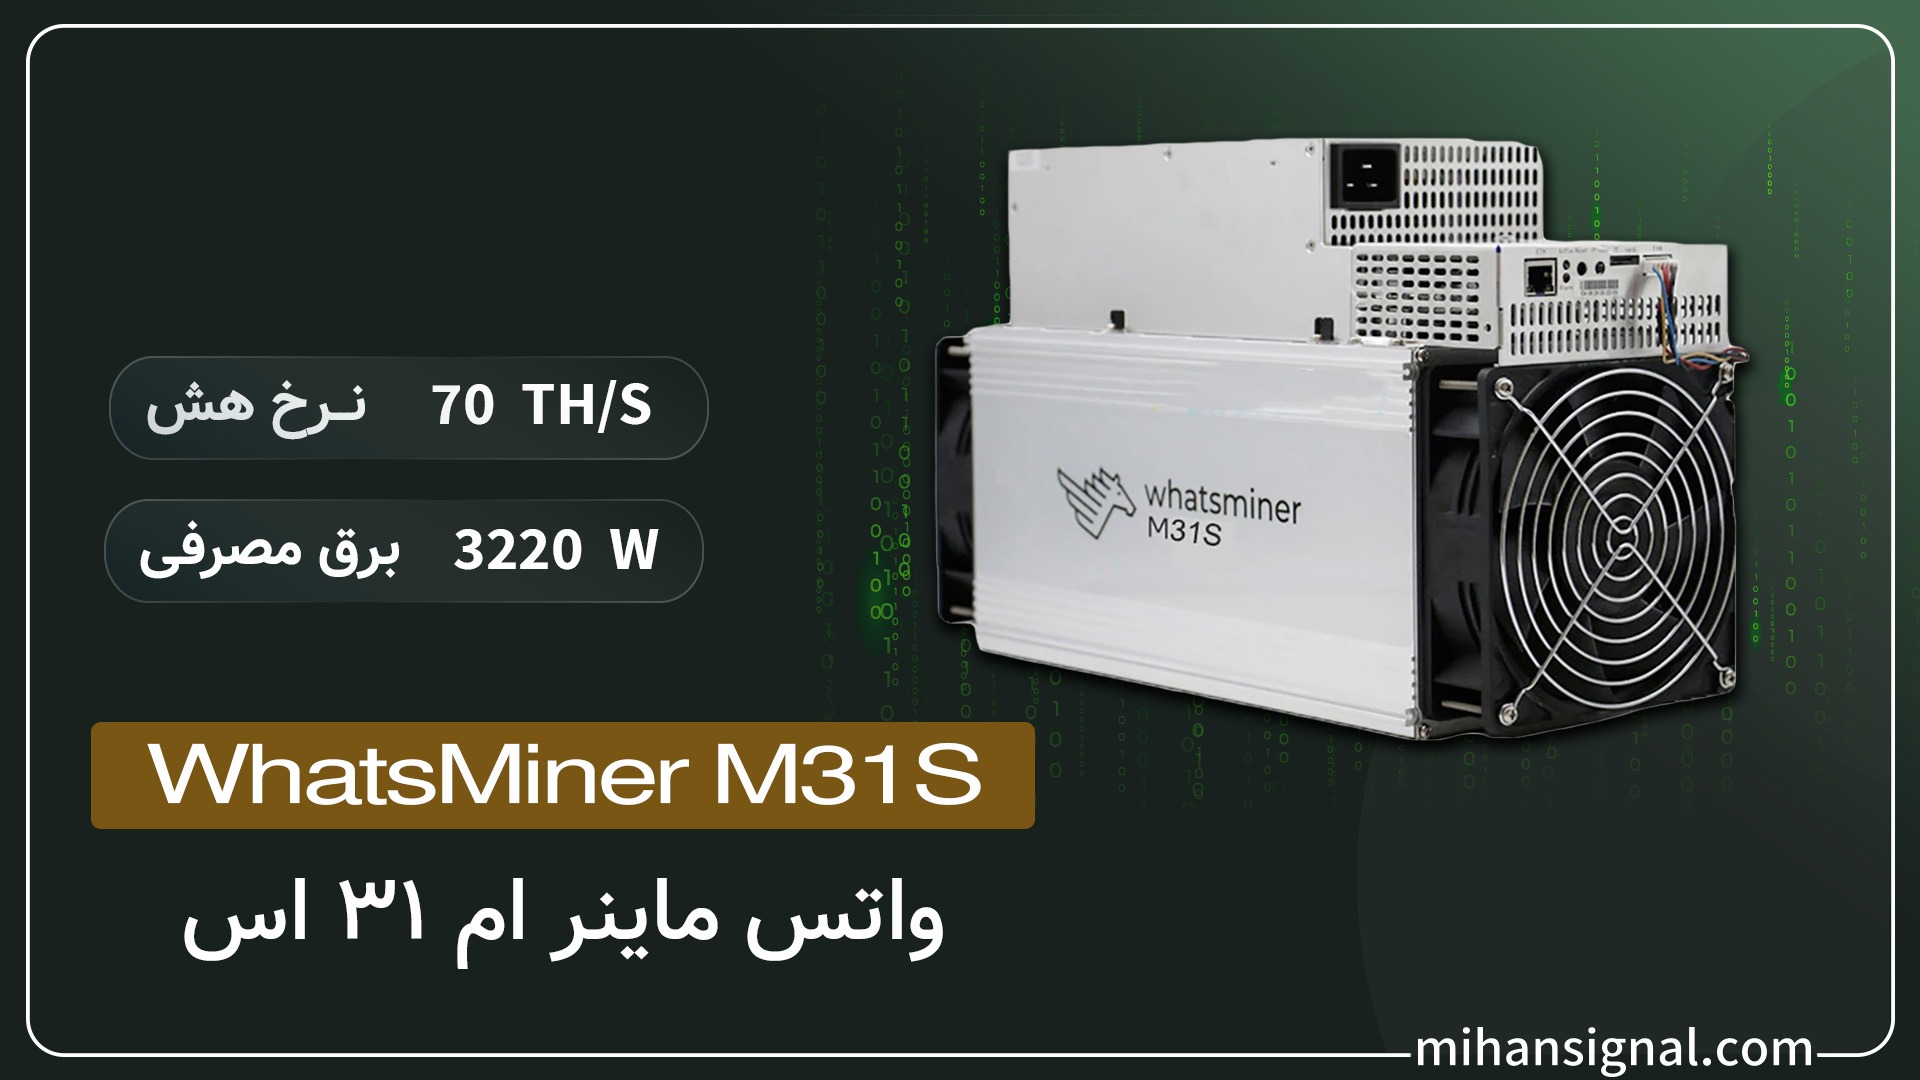 Whatsminer M31s